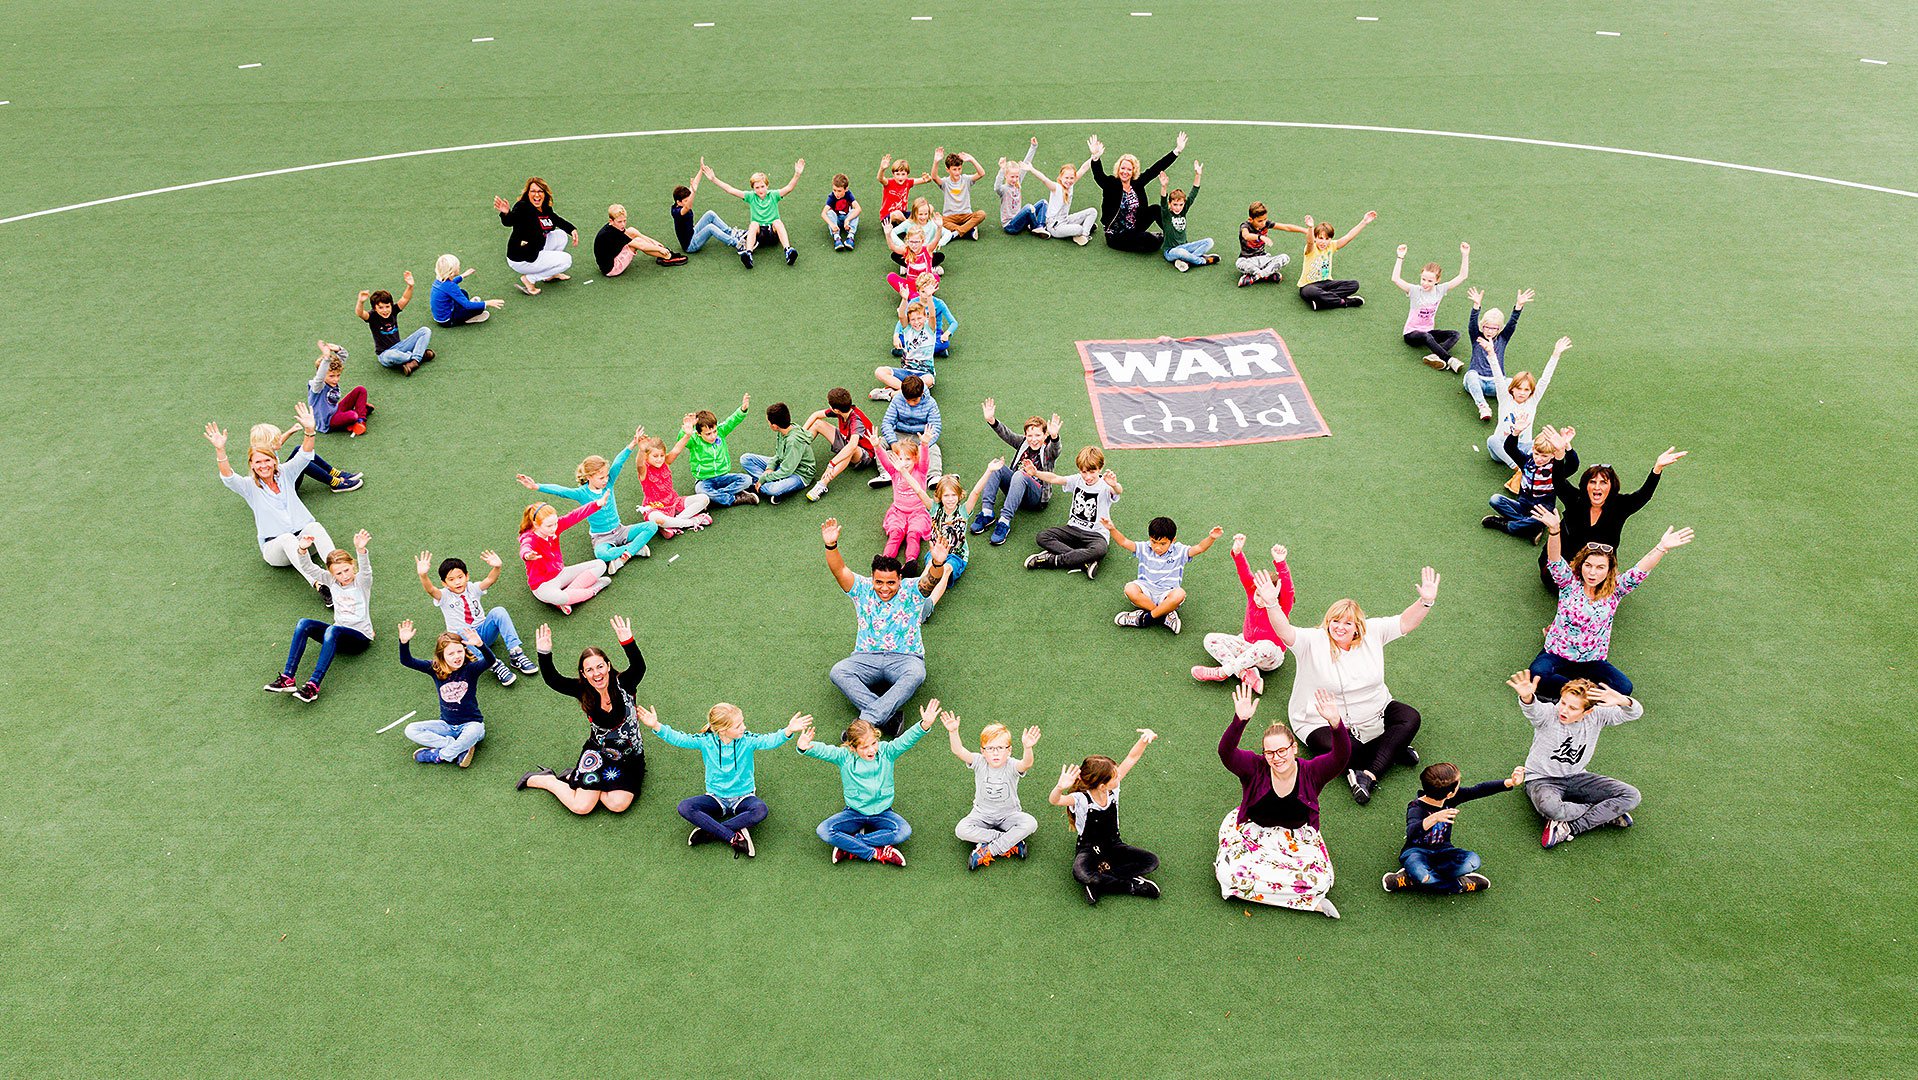 peace teken War Child SWK groep_actie voor War Child